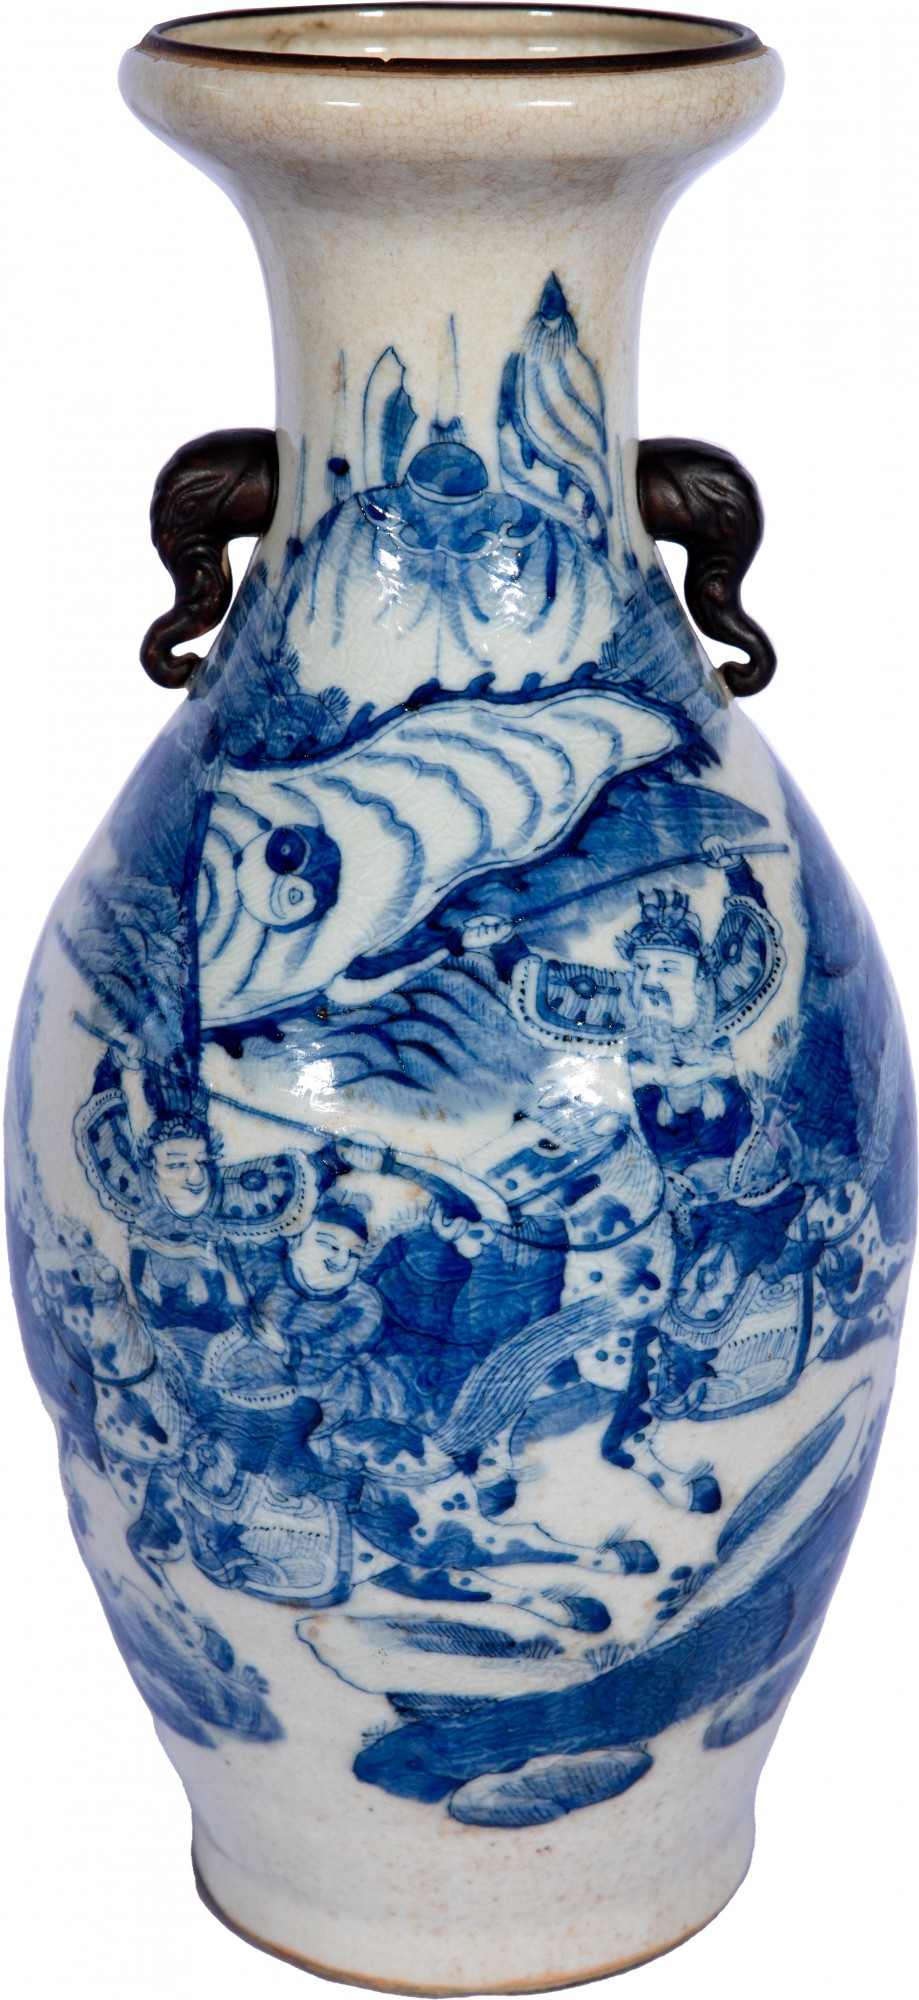 Vaso bojudo em porcelana chinesa decorado com figuras de guerreiros a cavalo em azul e branco - 